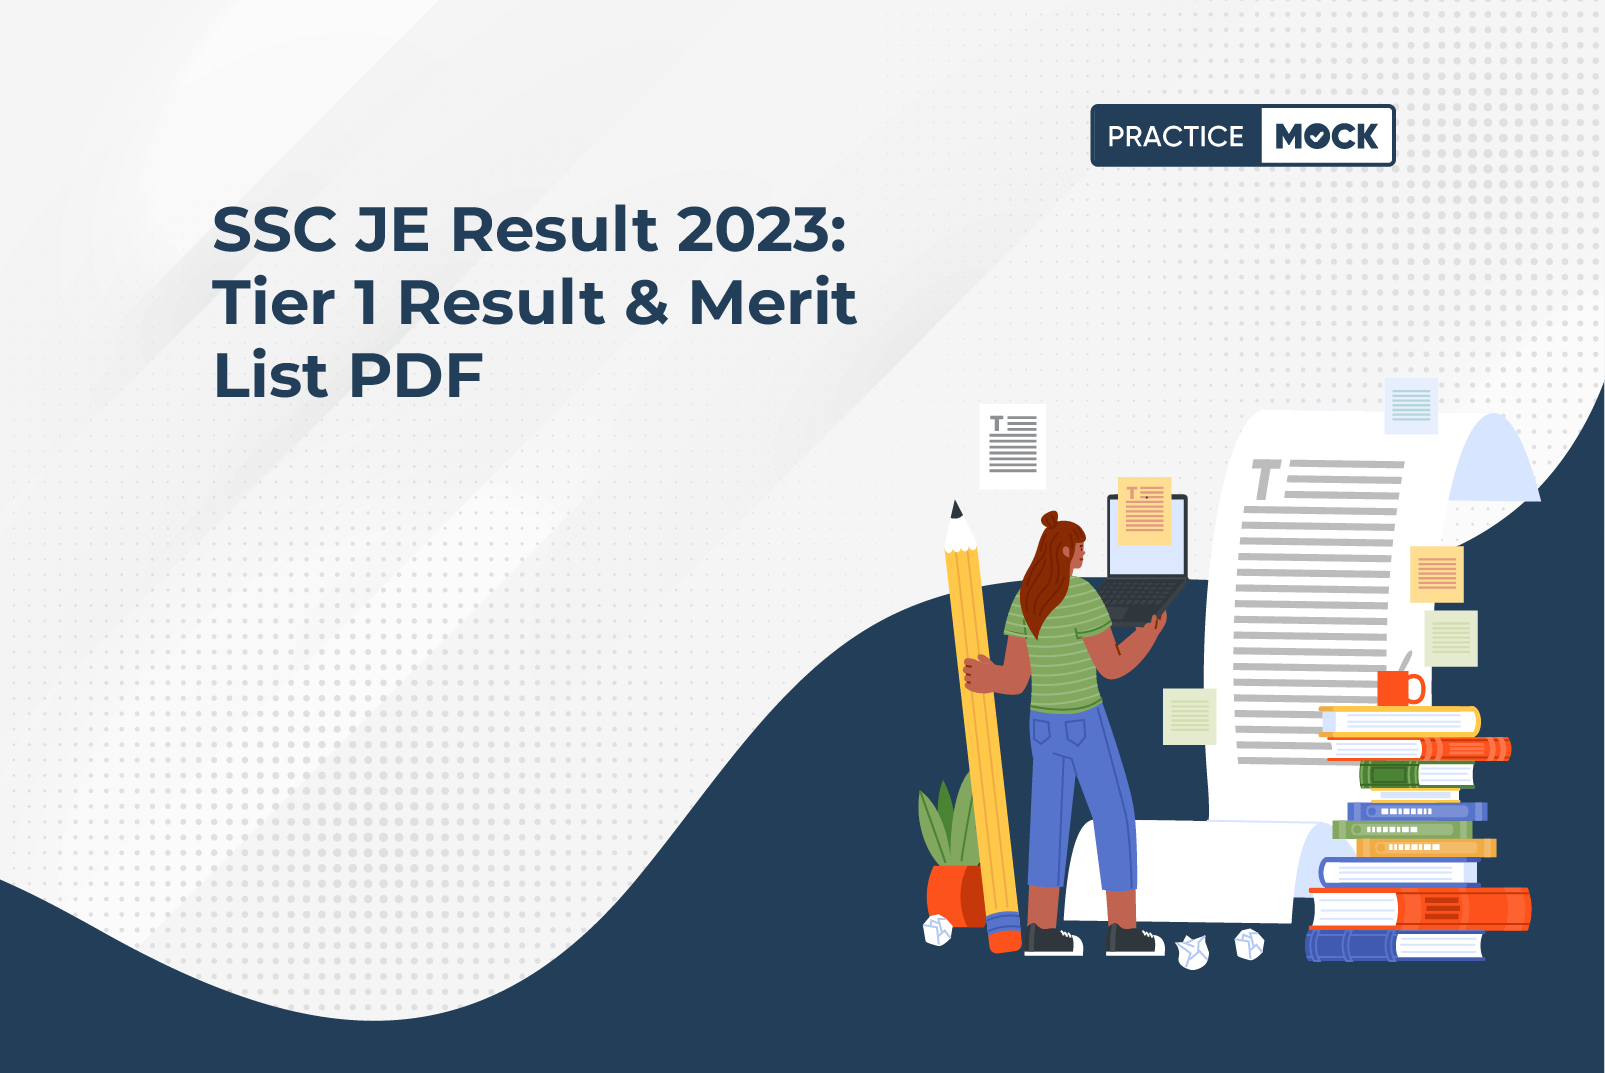 SSC JE Result 2023: Tier 1 Result & Merit List PDF